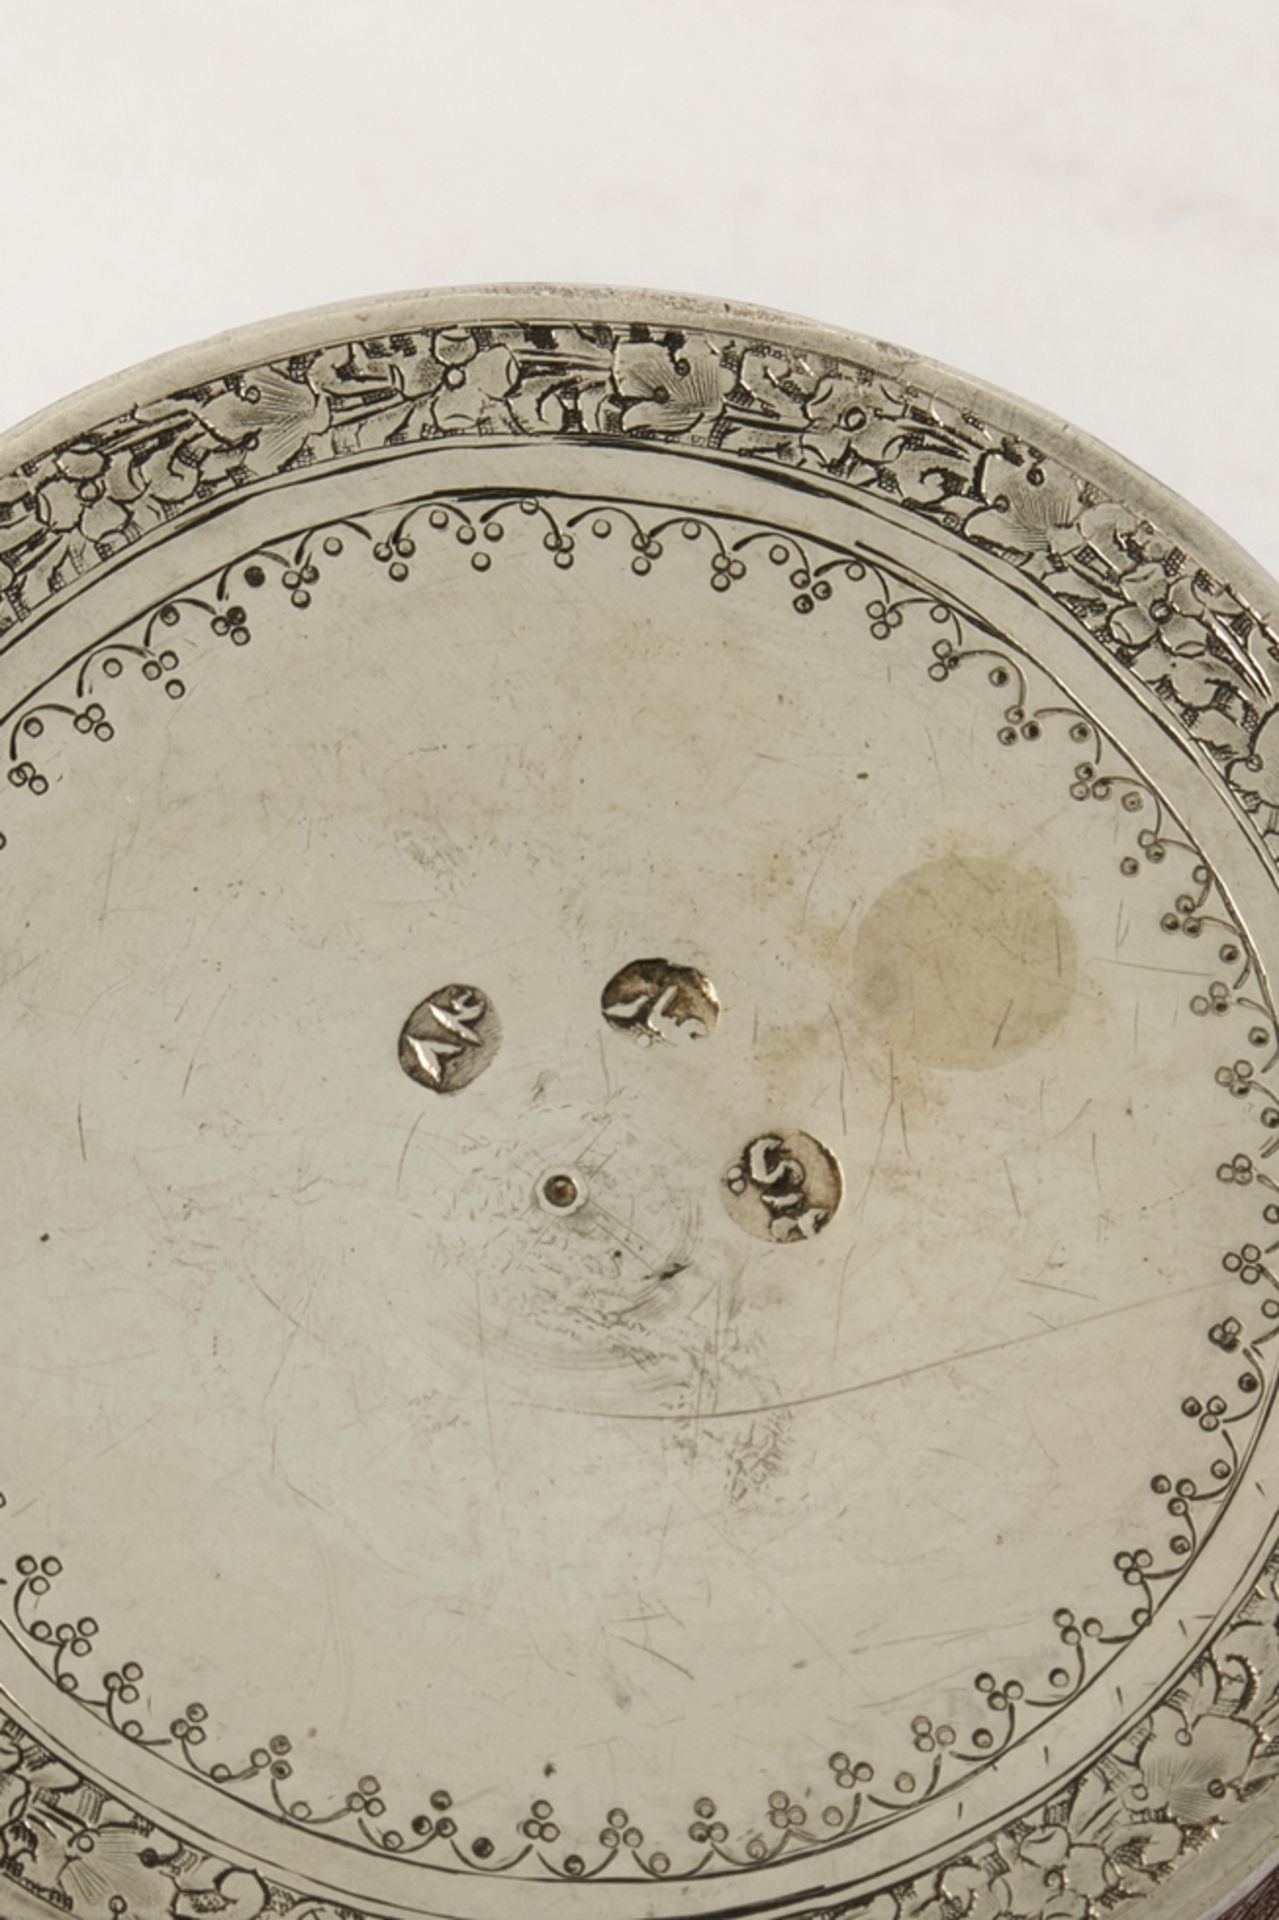 Deckeldose, Silber, Orient, 19./20. Jh., Ornamentdekor, 3.5 cm hoch, ø 6.8 cm, ca. 90 g - Bild 3 aus 3